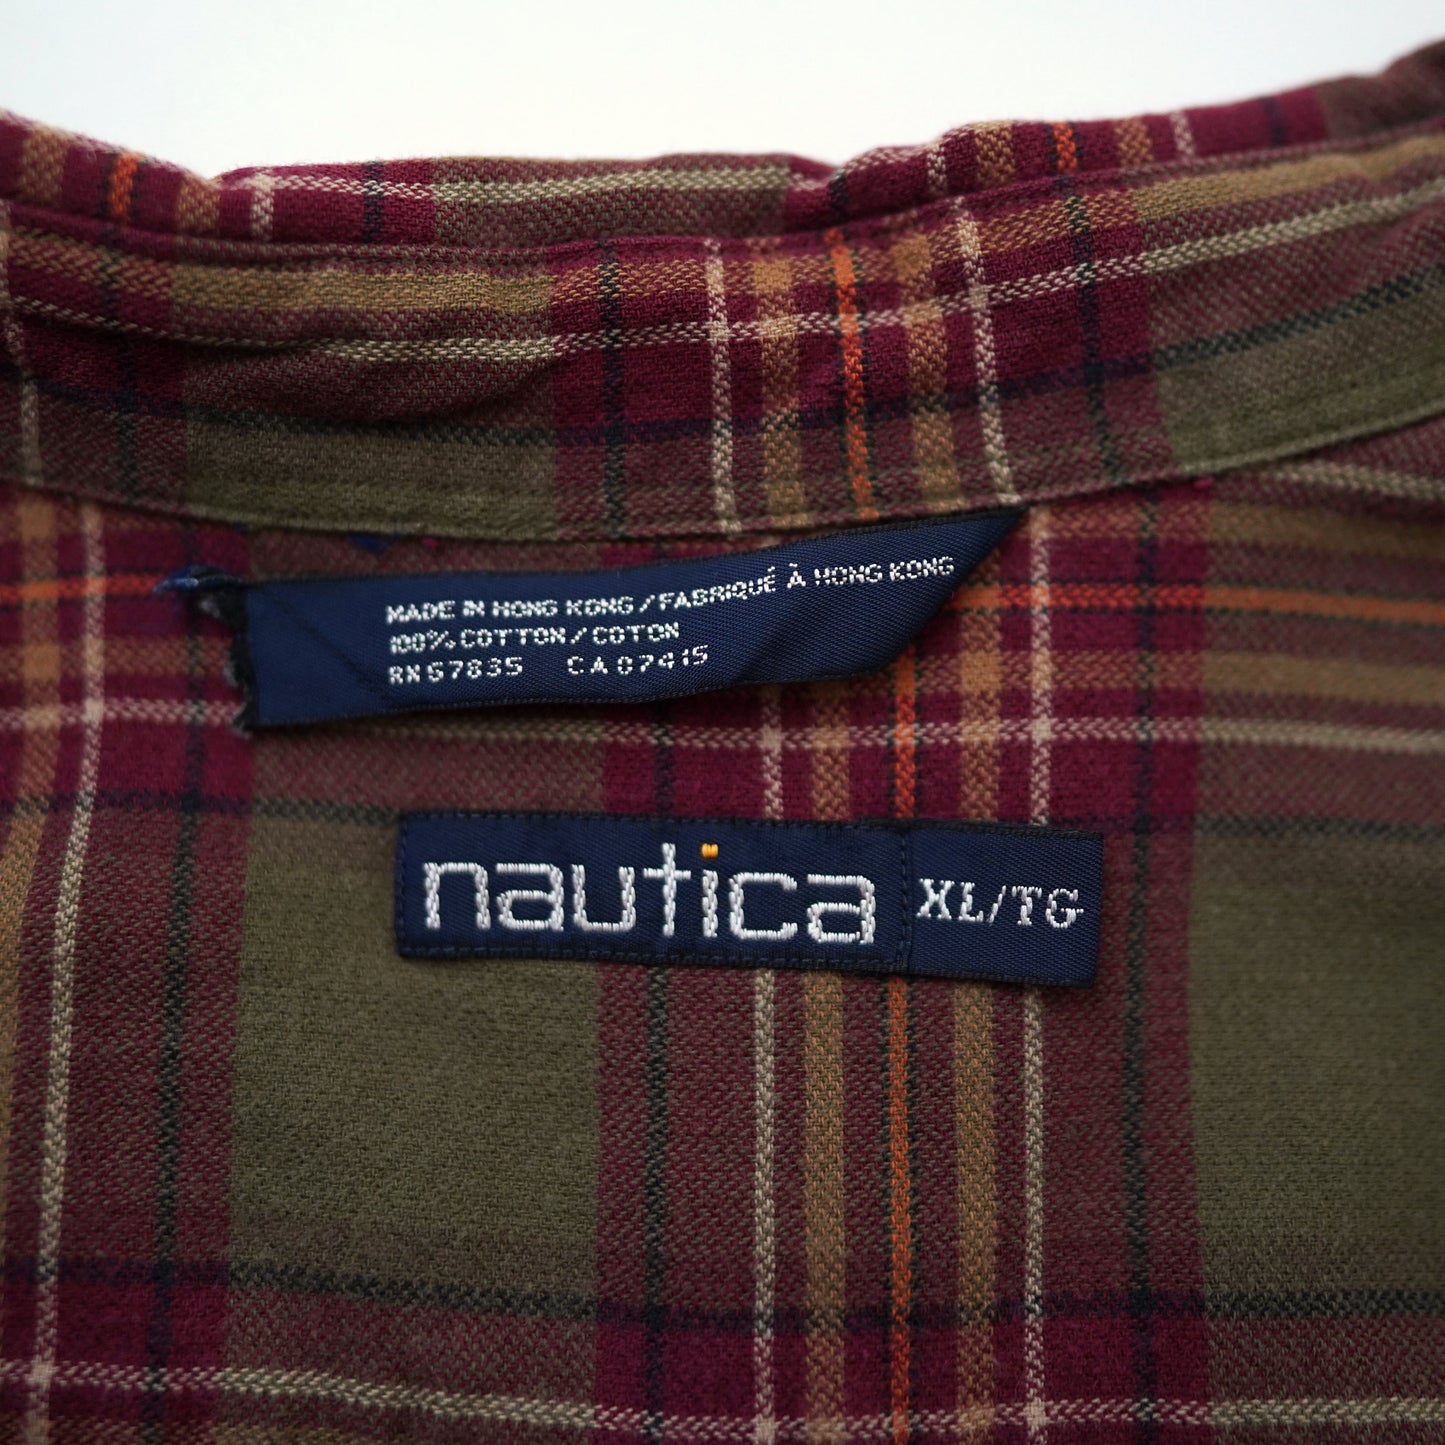 NAUTICA check shirt